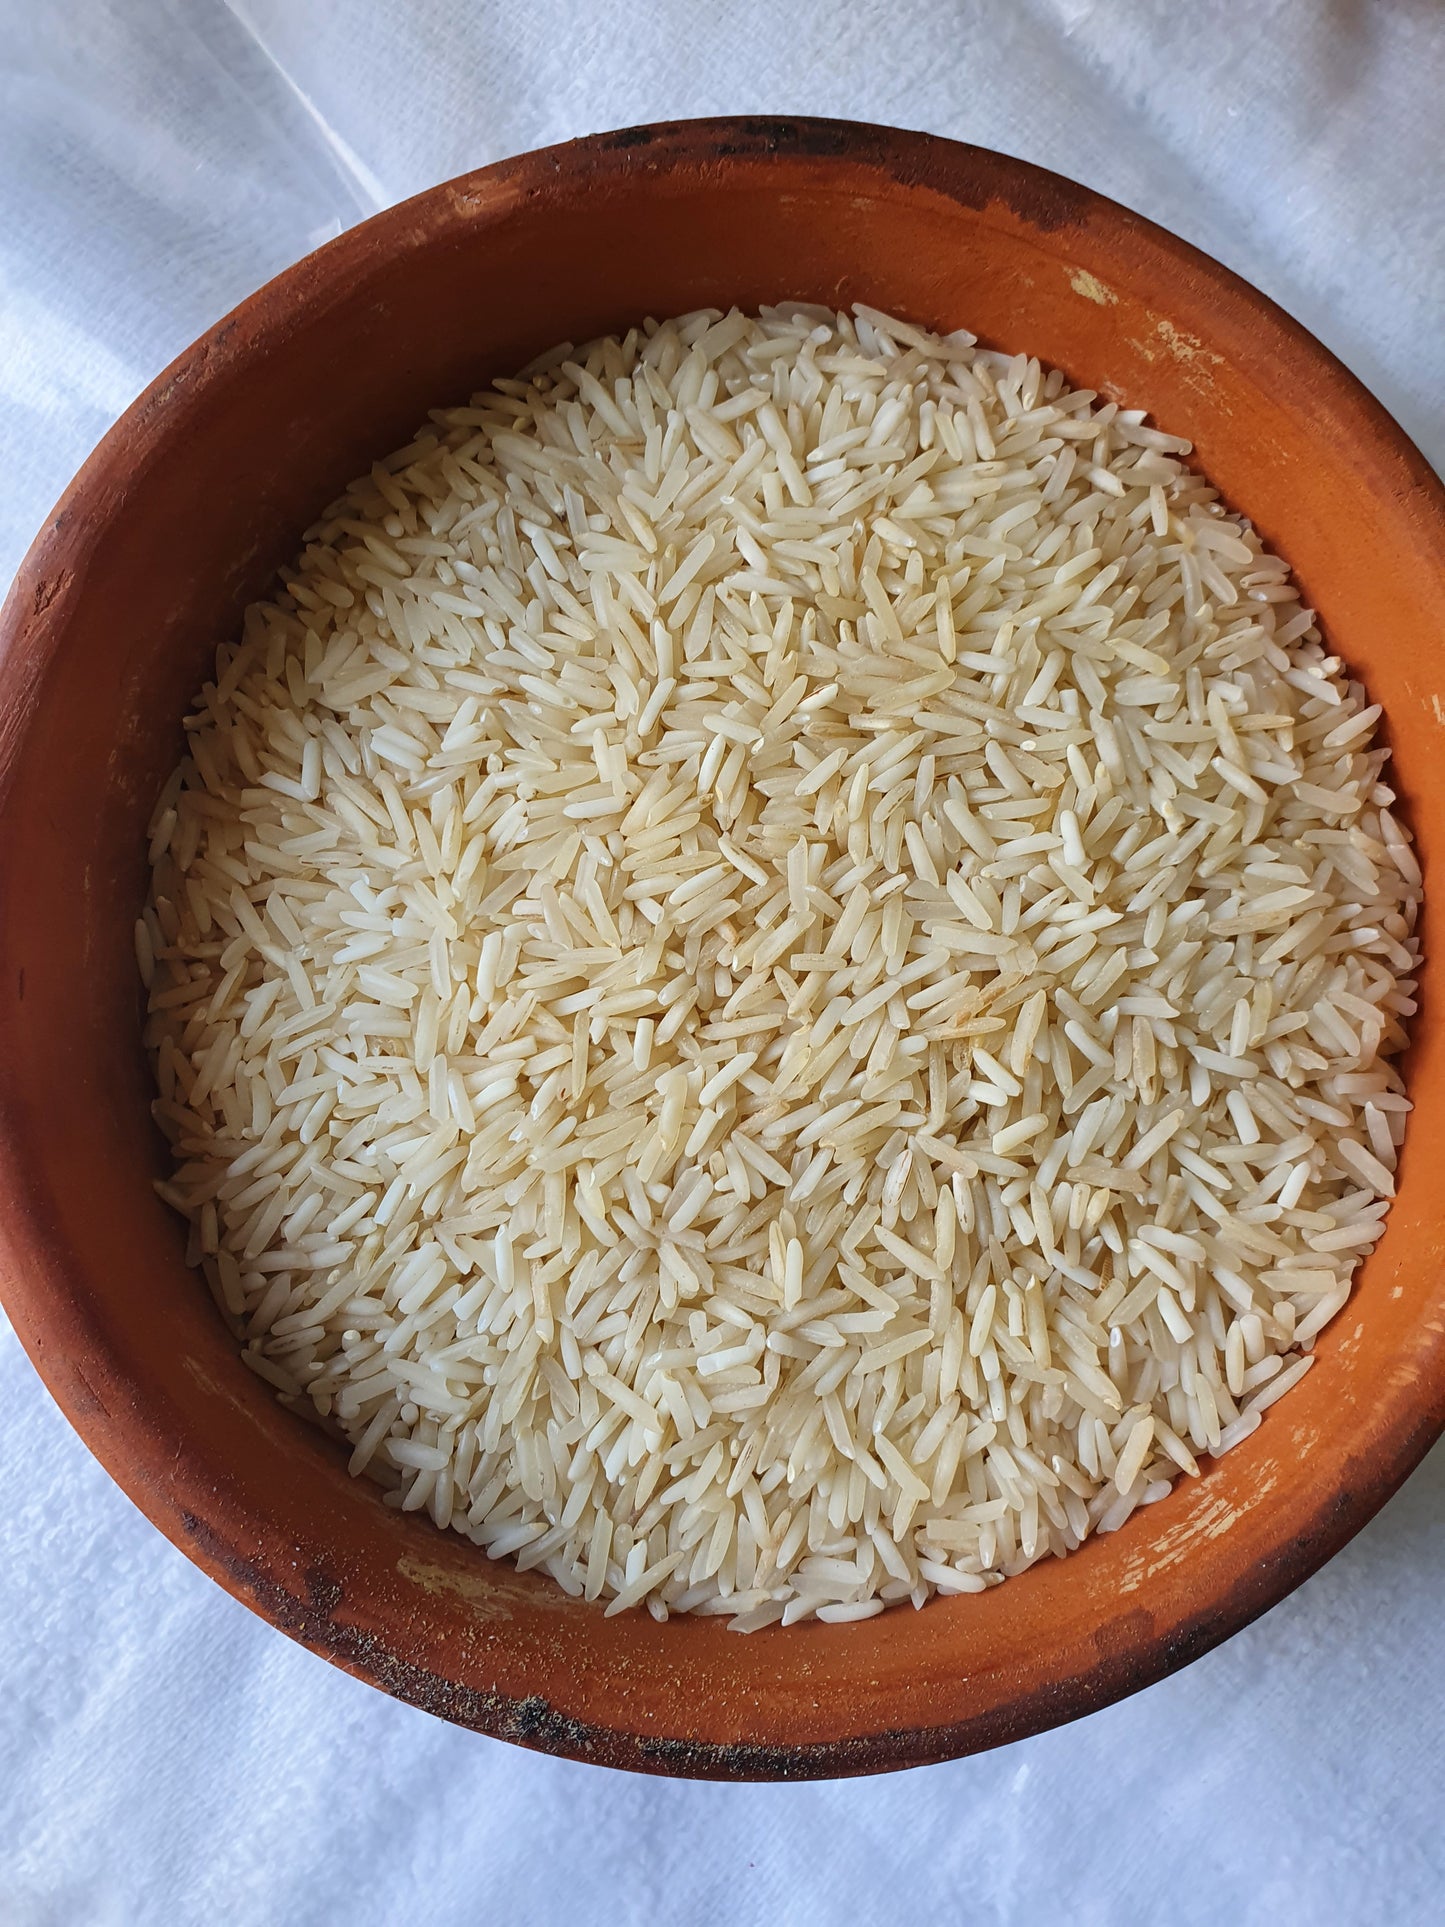 JB -  Badshah Rice - Super Kernel Rice - Kainat - 1121 - White Rice